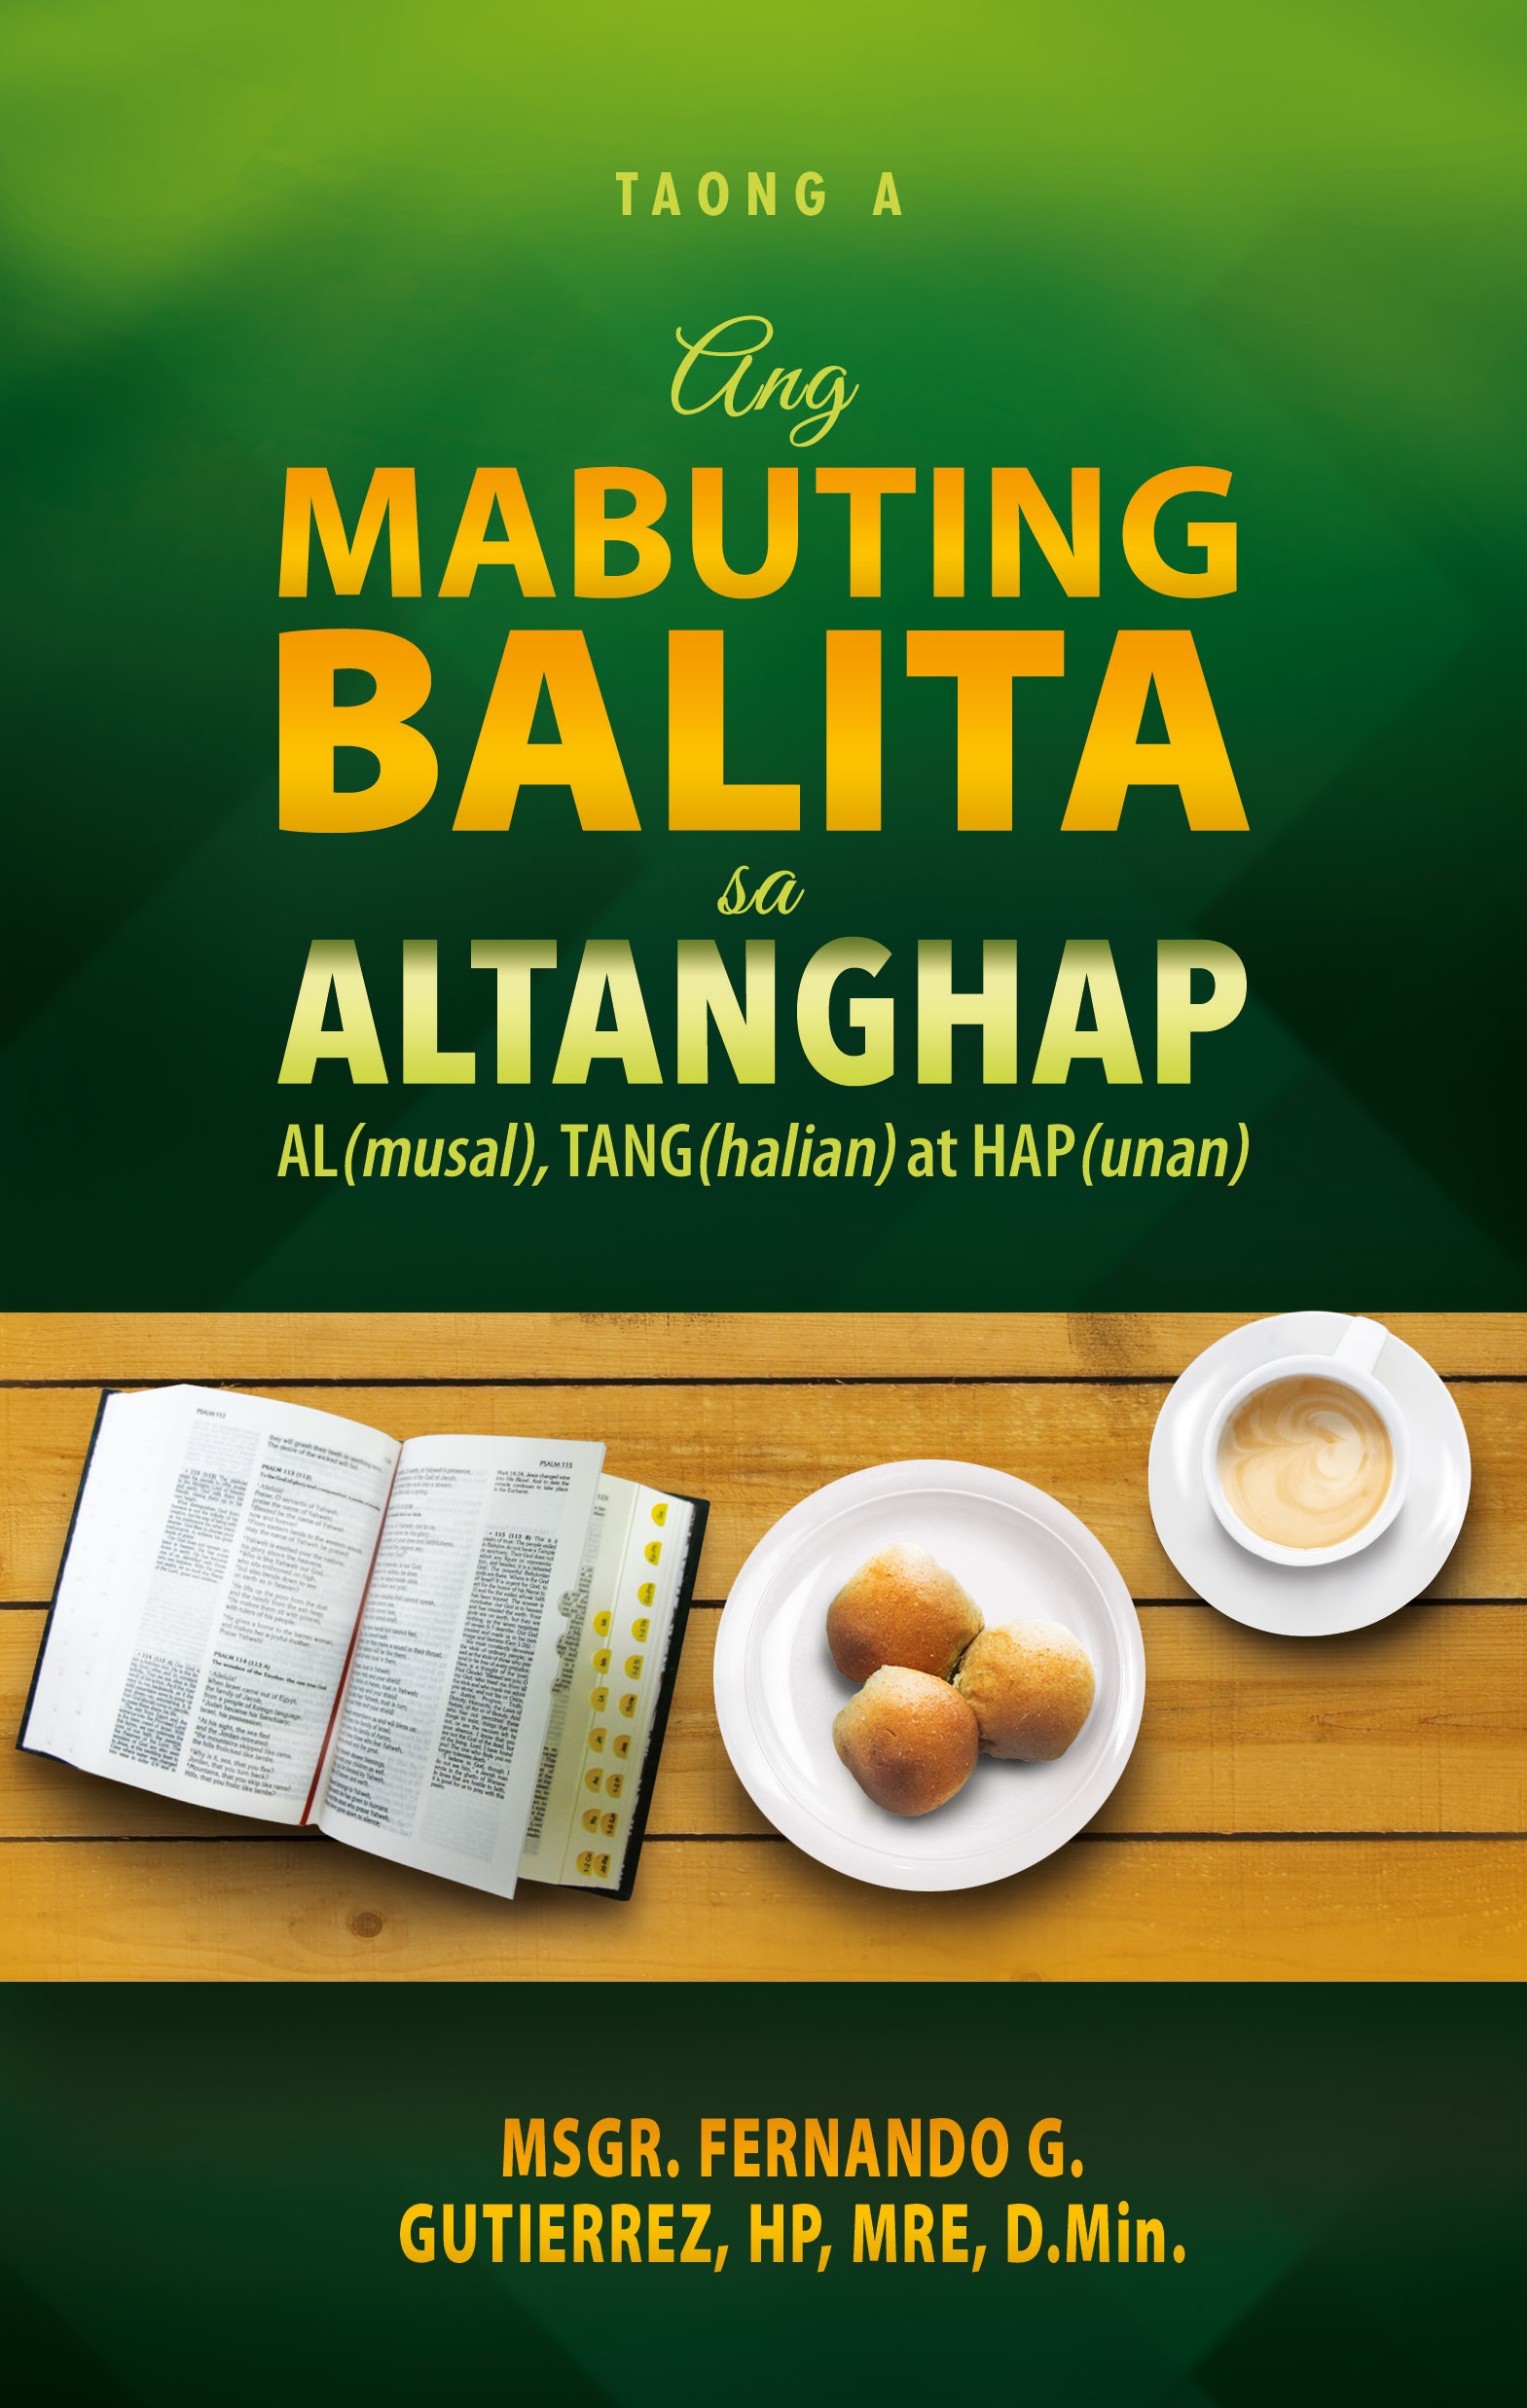 ANG MABUTING BALITA SA ALTANGHAP TAONG A AL(musal), TANG(halian) at HAP(unan)